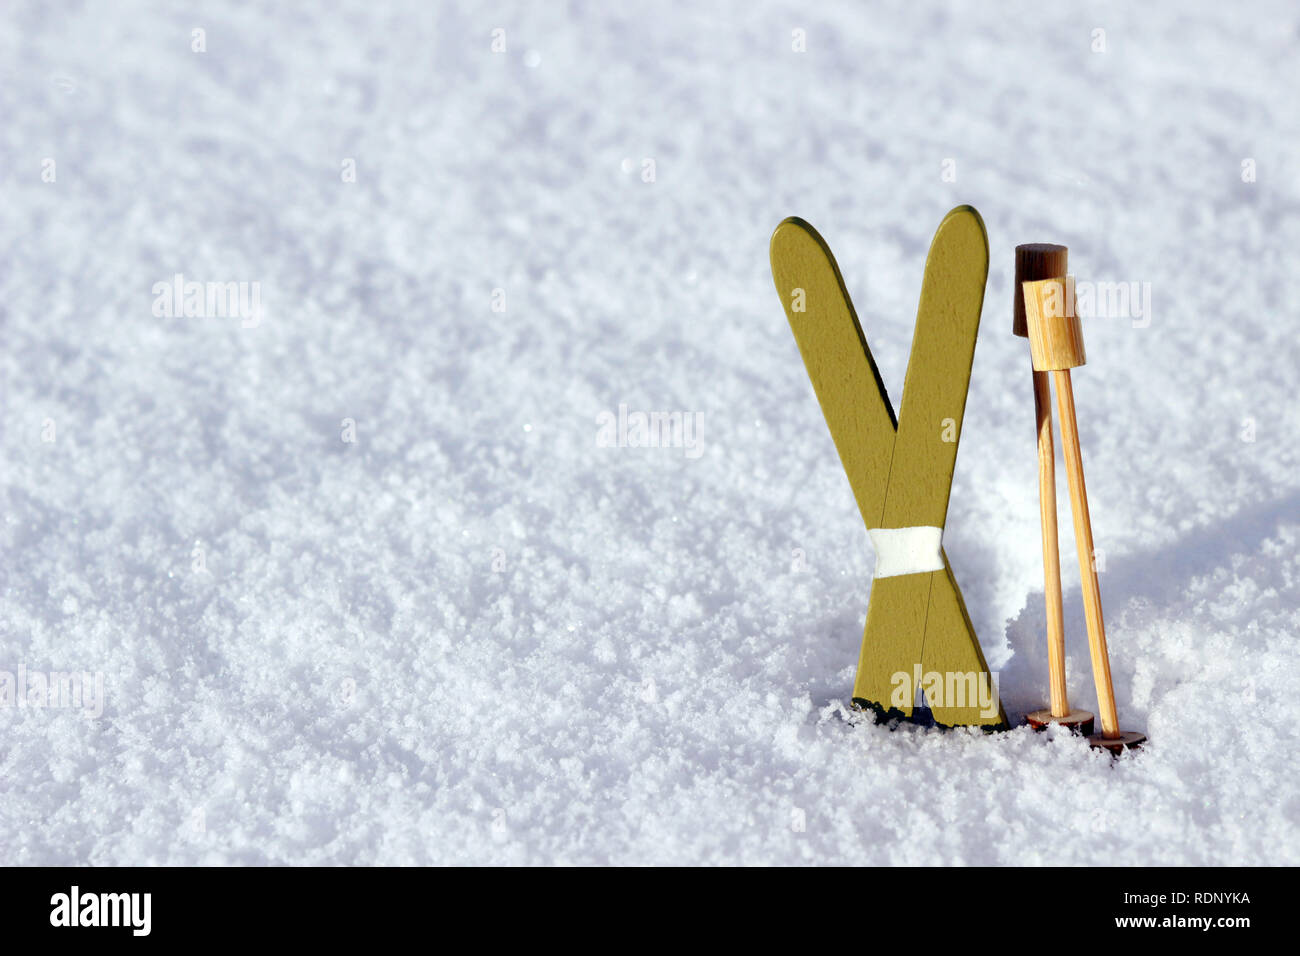 Paire de skis miniature avec des bâtons de ski debout dans la neige sur une journée ensoleillée Banque D'Images